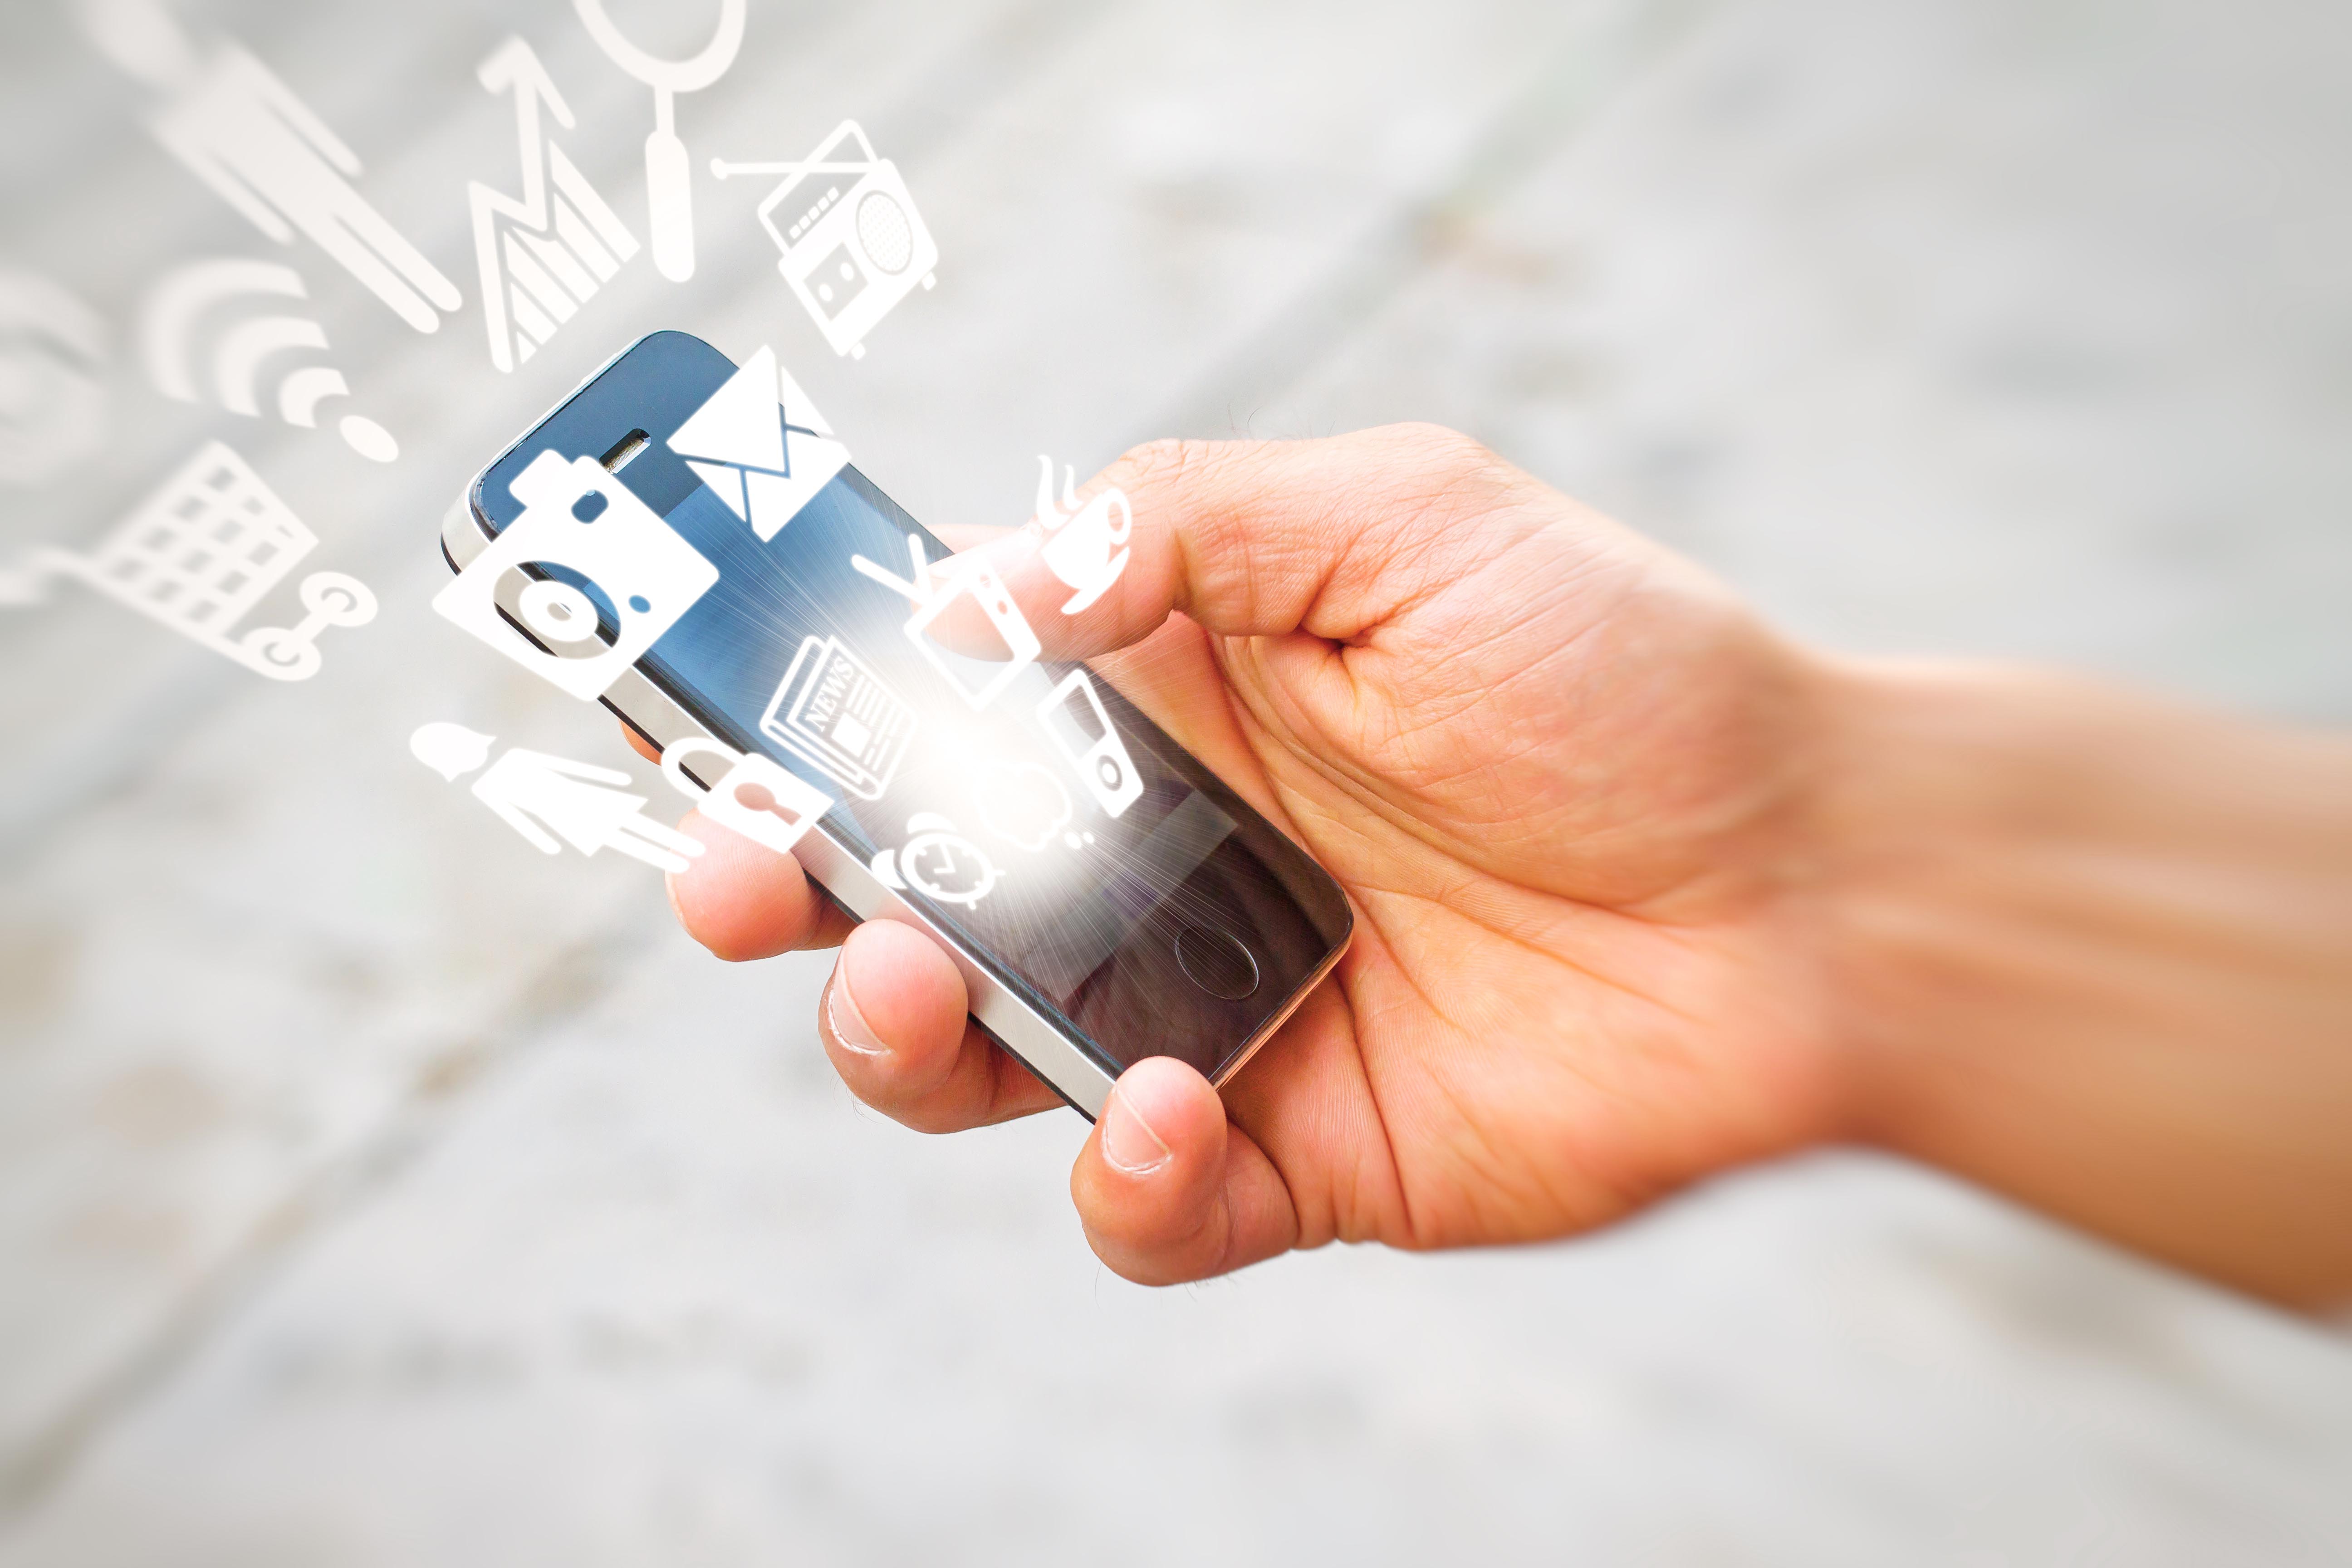 When does SMS marketing work best?